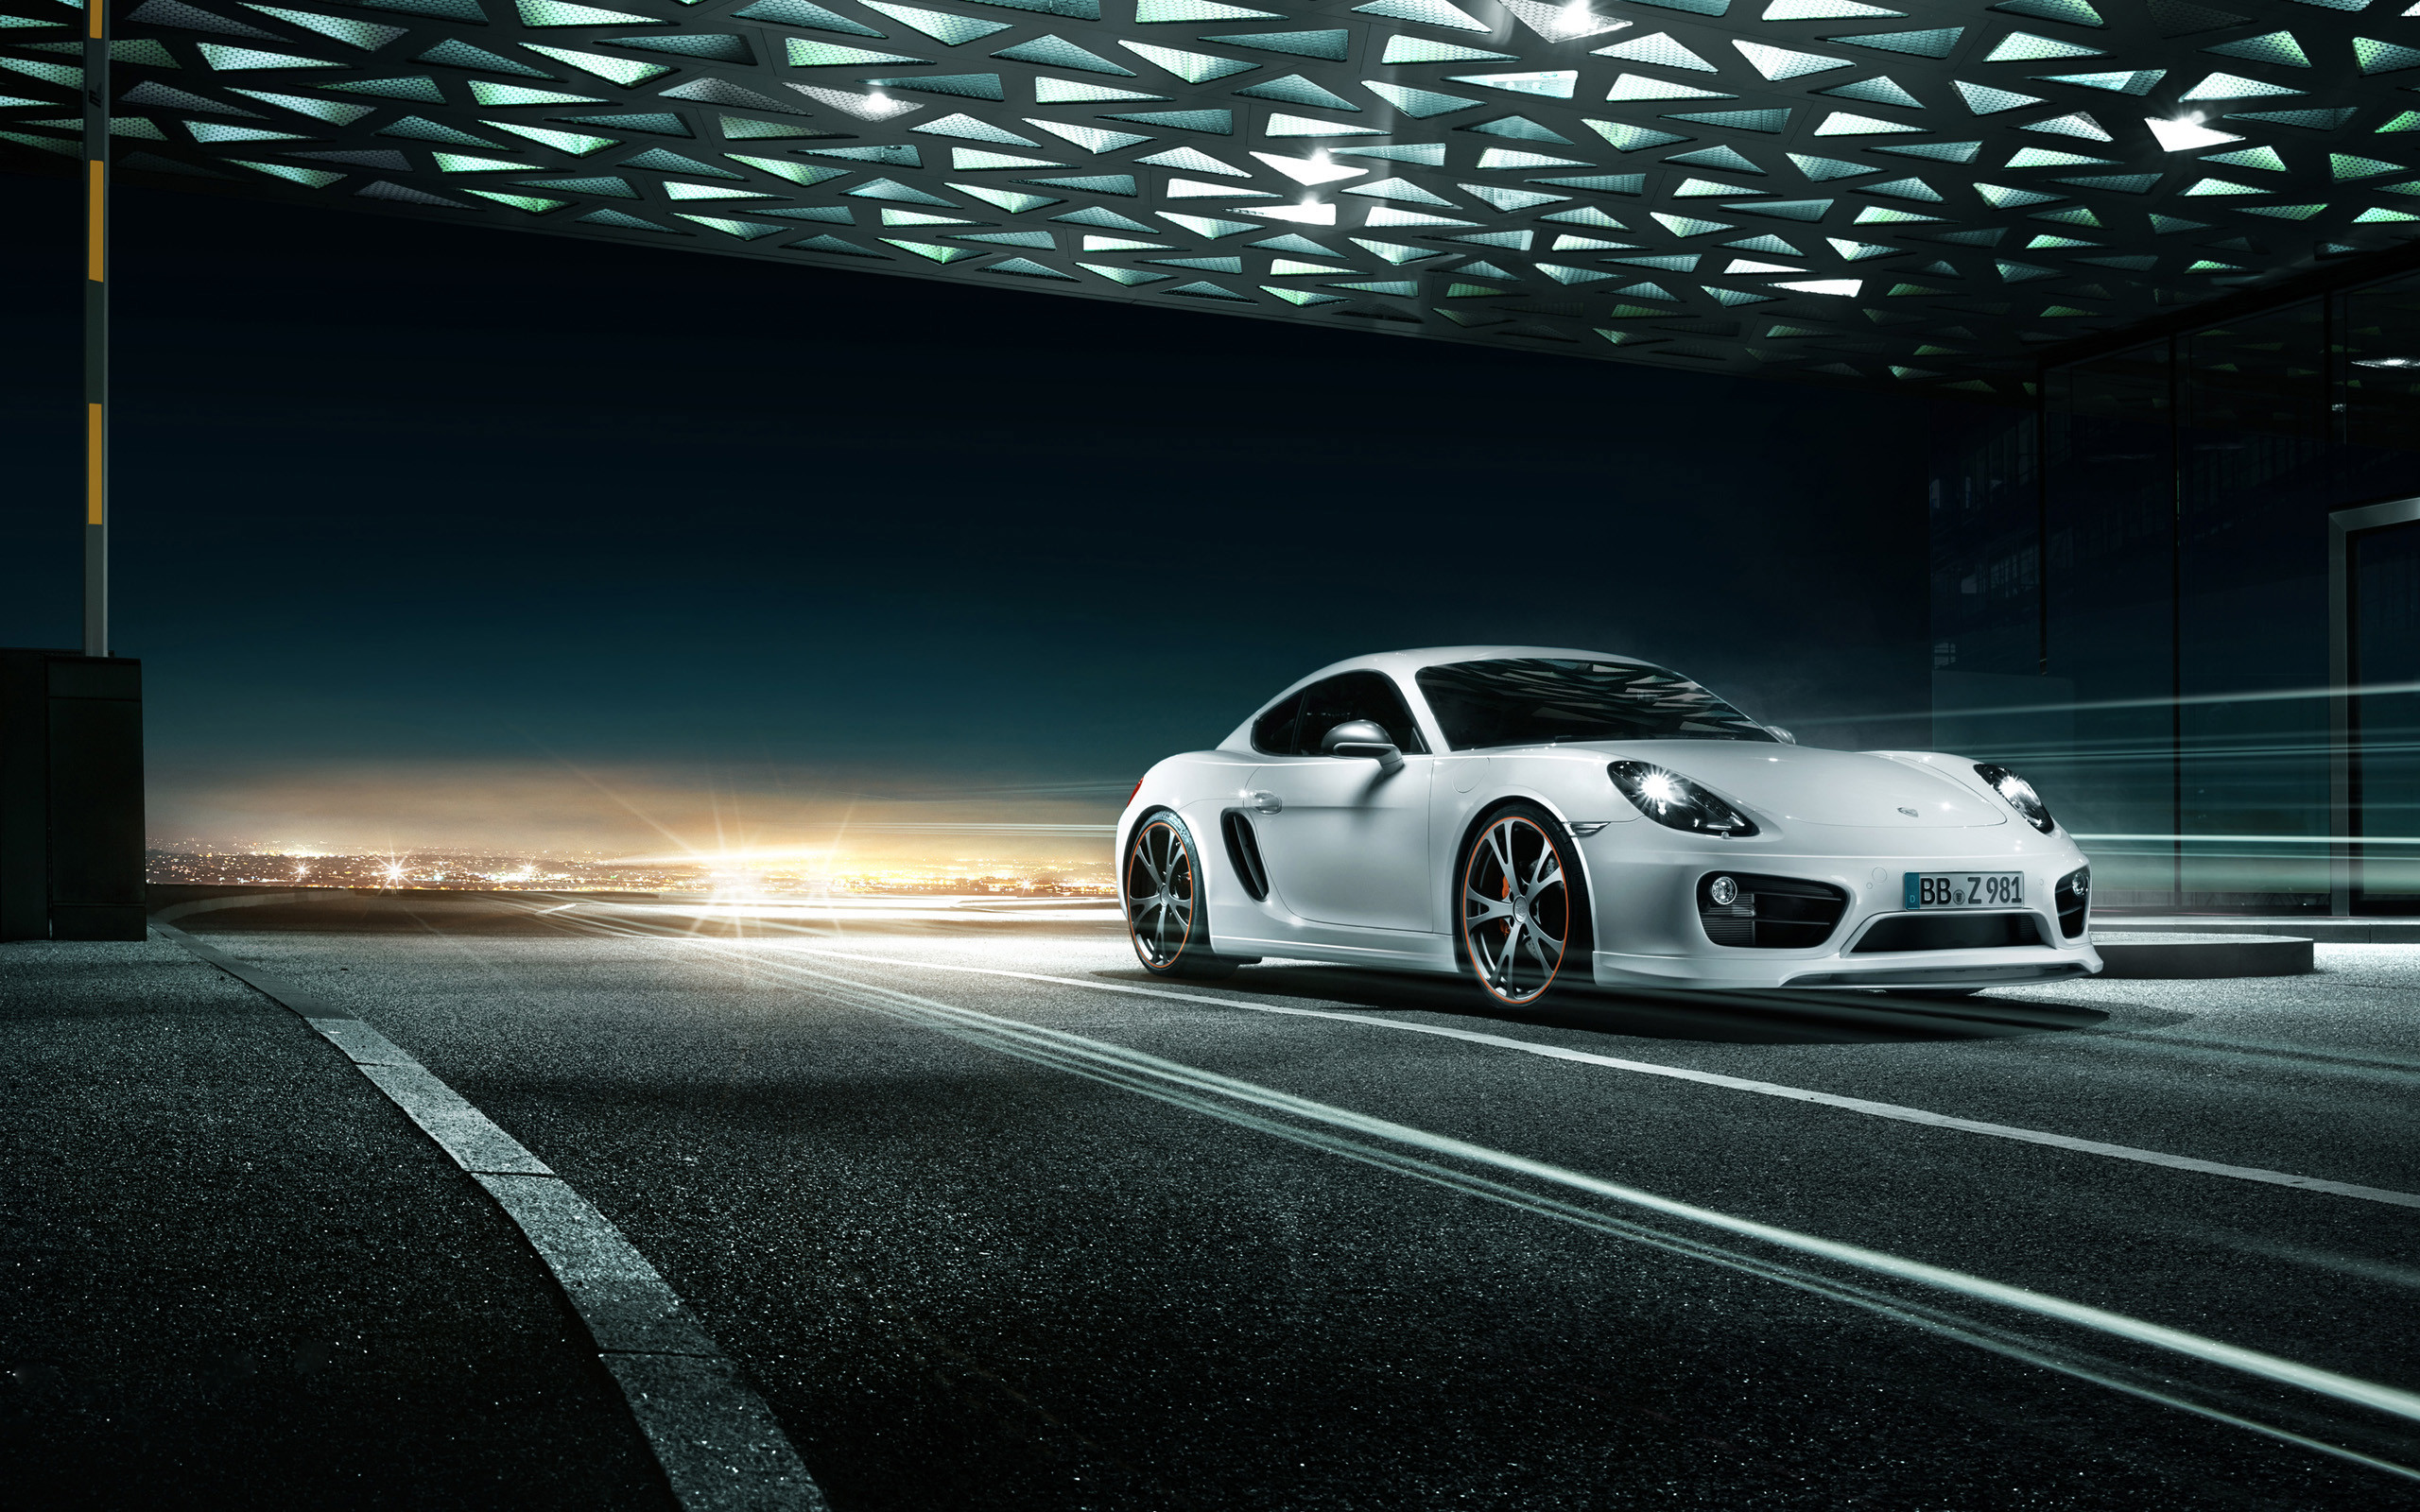 2560x1600 Porsche Wallpaper